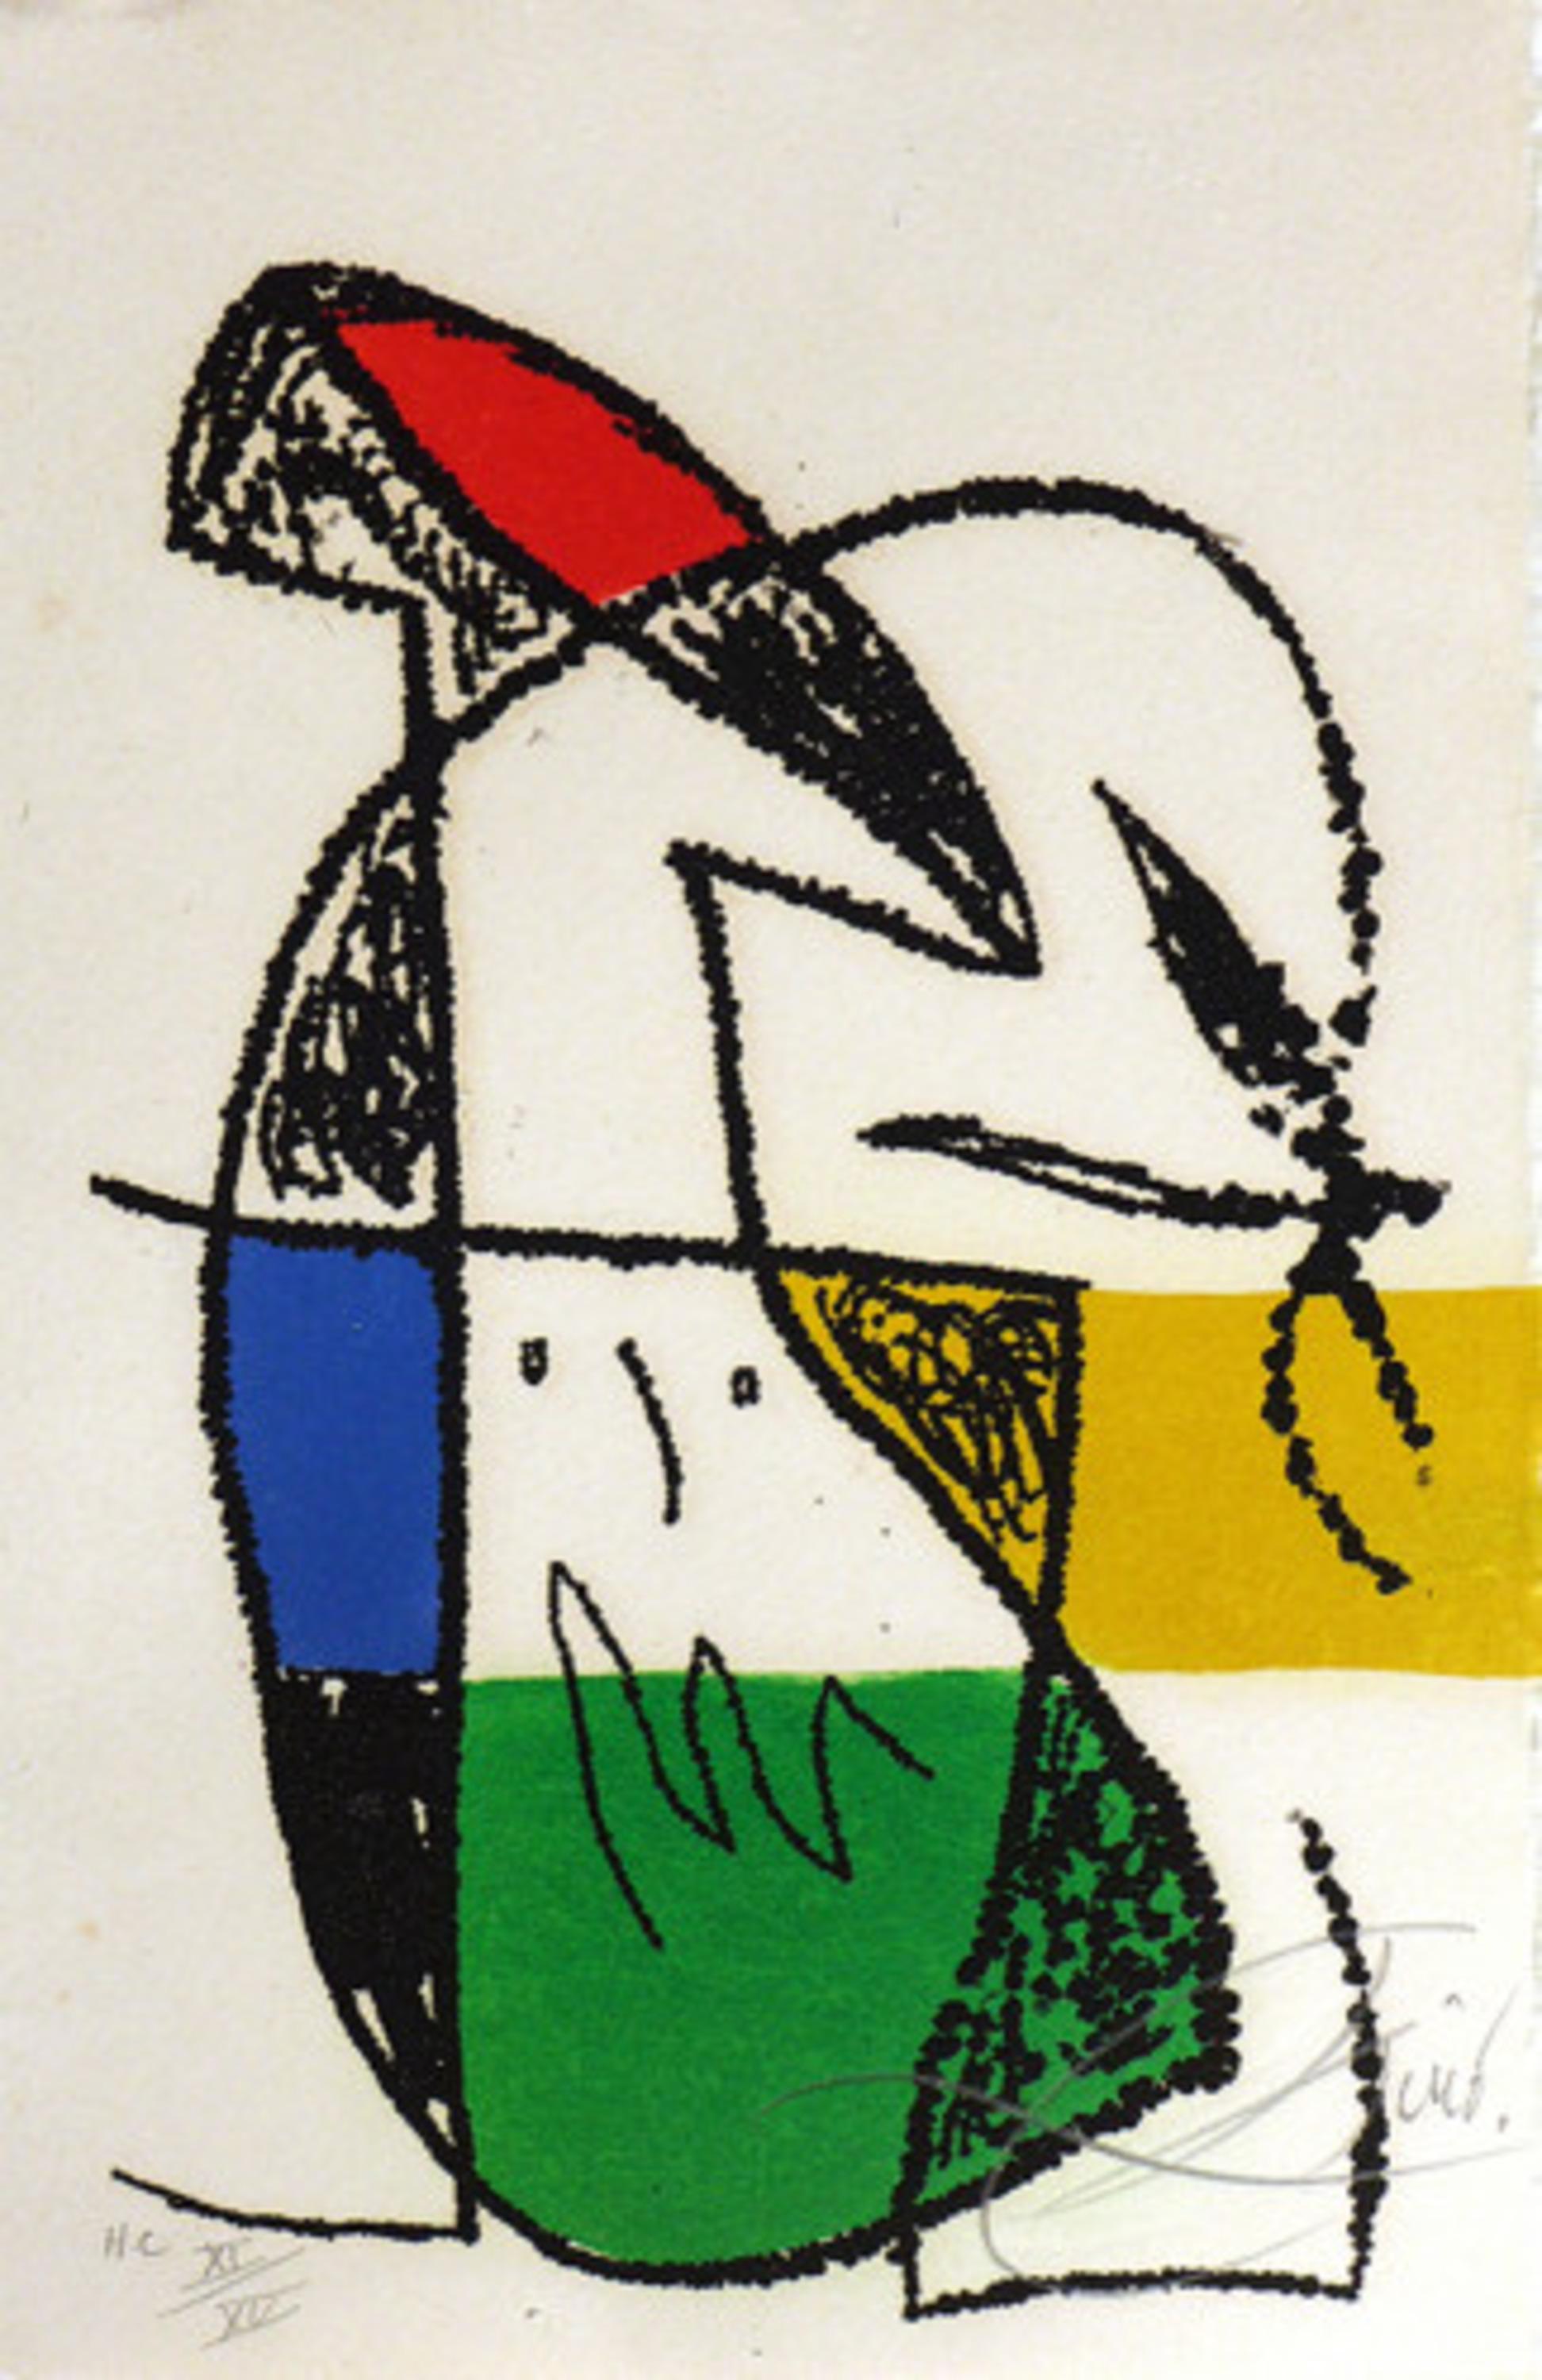 Ceci est la couleur de mes rêves - Print by Joan Miró